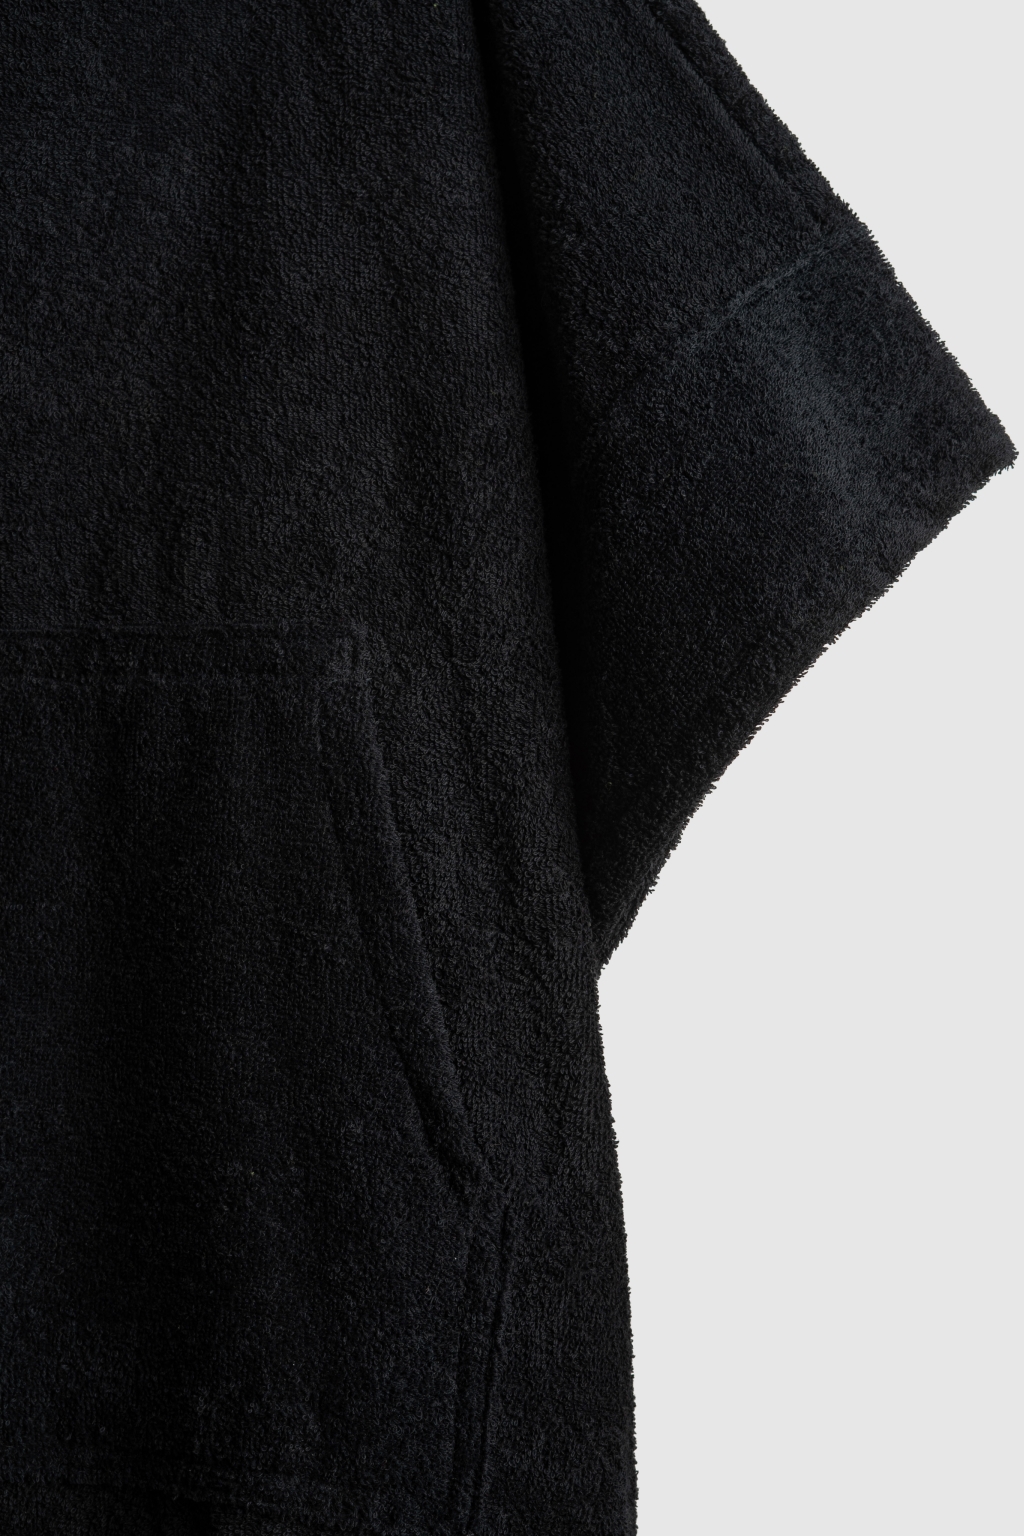 poncho black towel 2